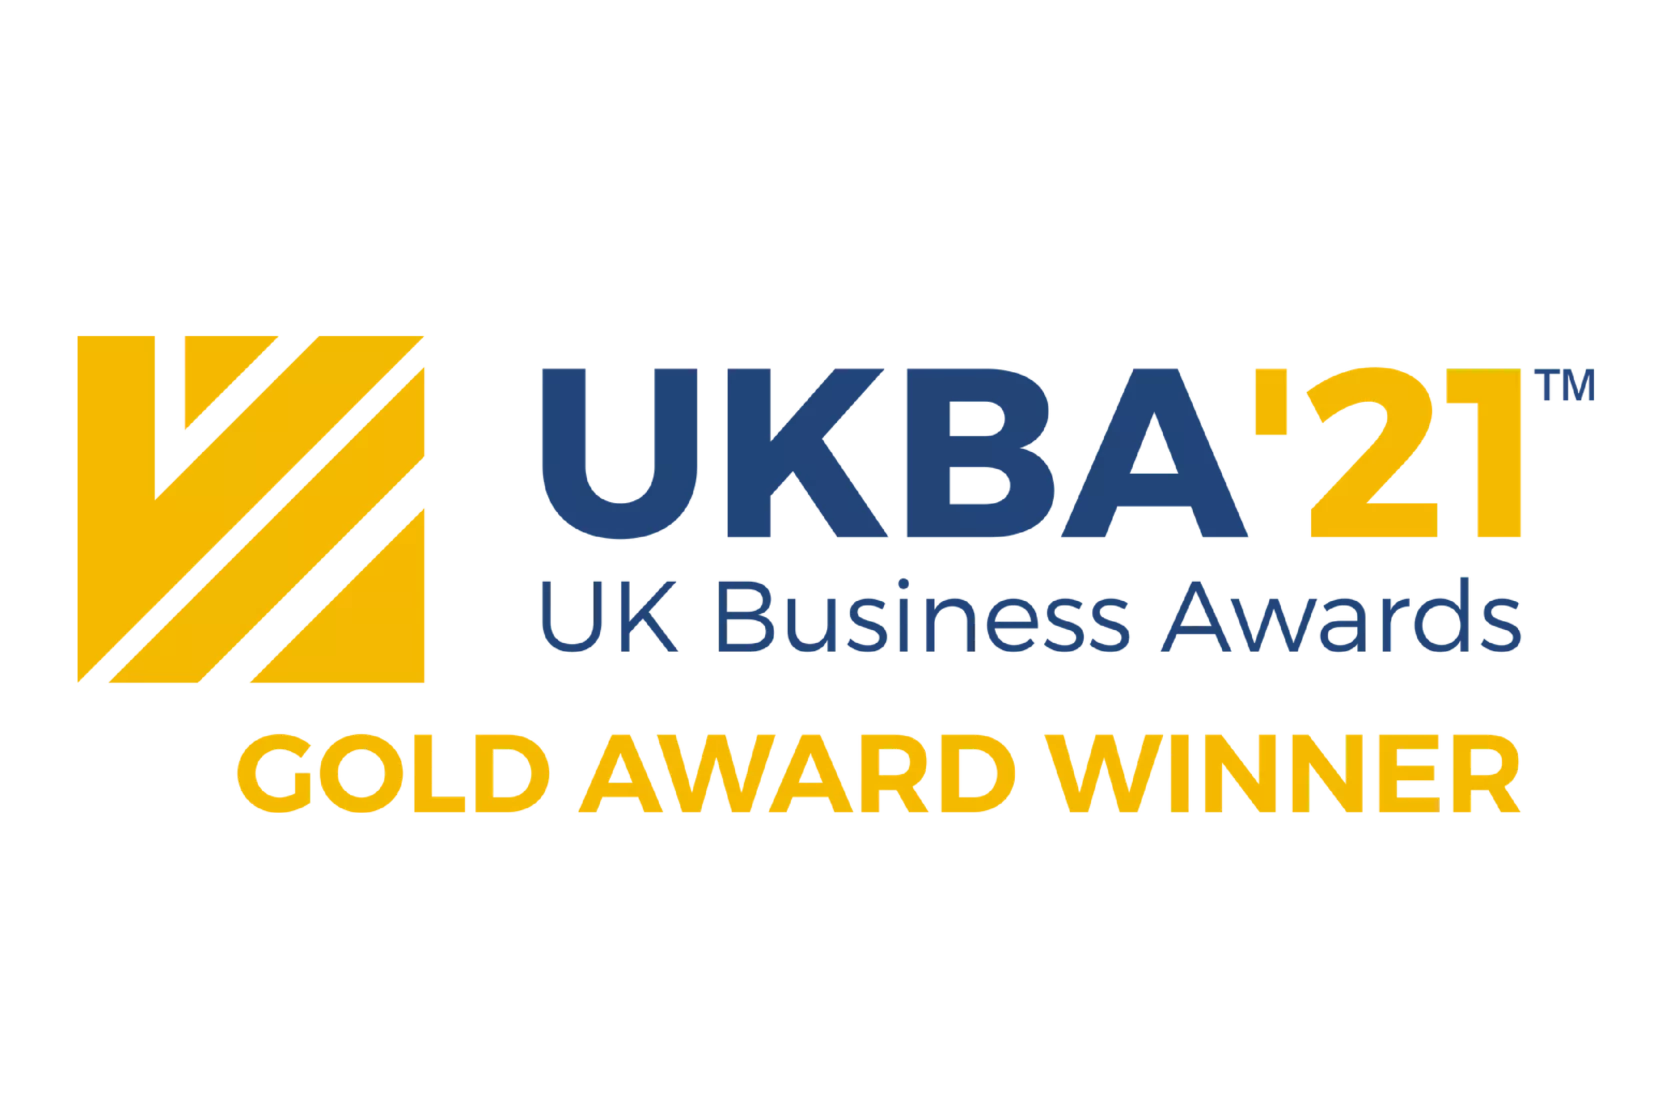 UK Business Awards Gold Award Winner Logo